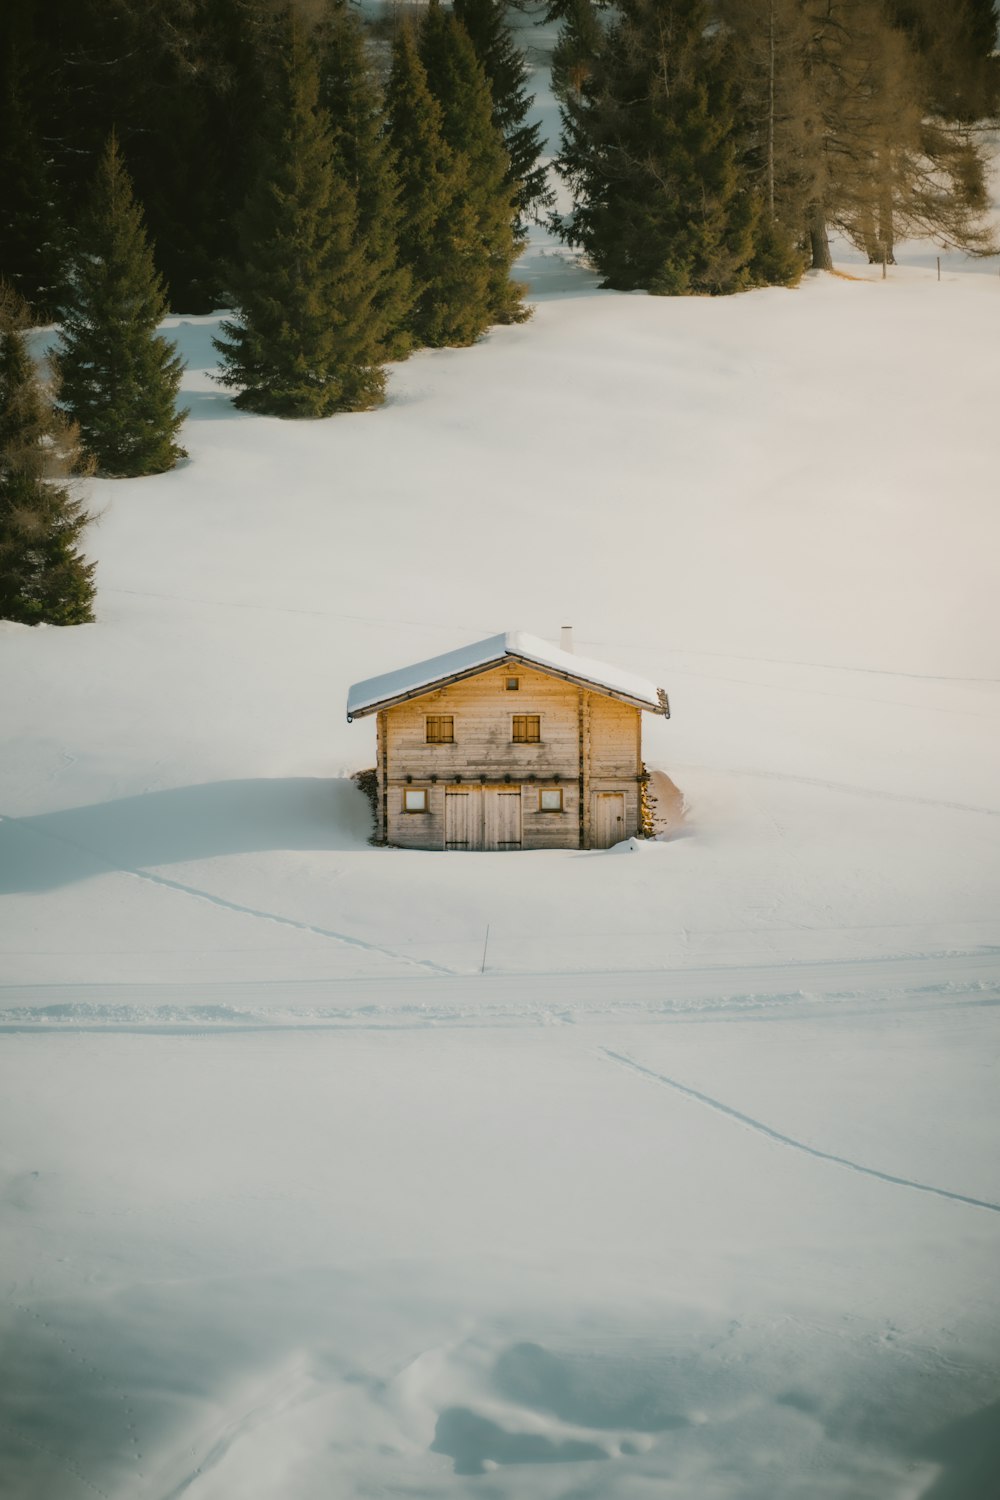 Eine kleine Hütte inmitten eines verschneiten Feldes